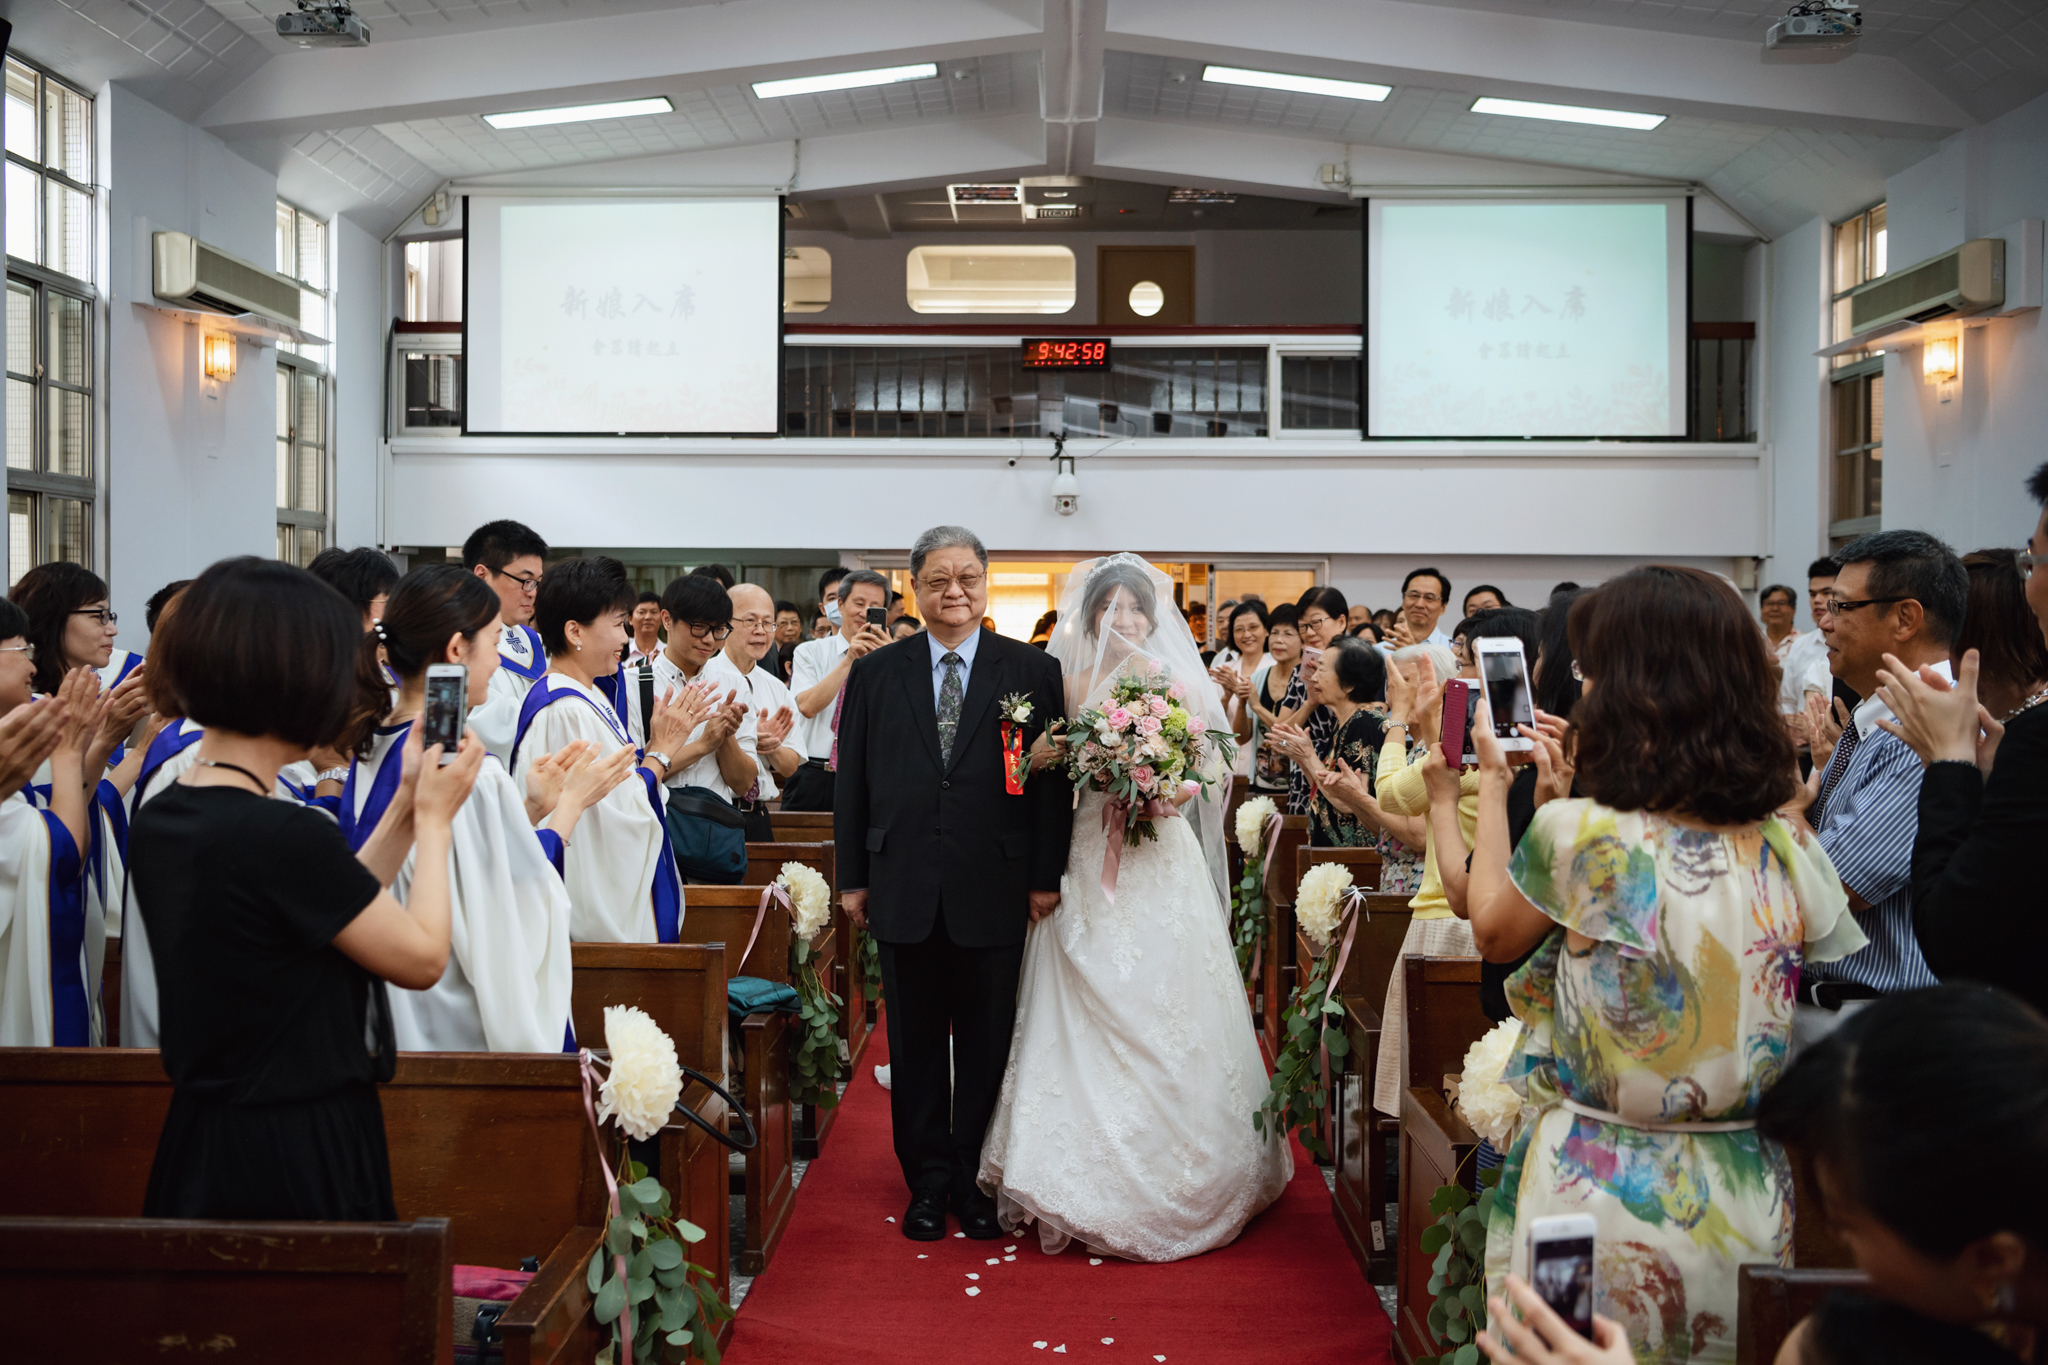 東法, EASTERN WEDDING, 婚禮紀錄, 台北婚攝, 婚禮影像, 雙攝影師, 世貿33